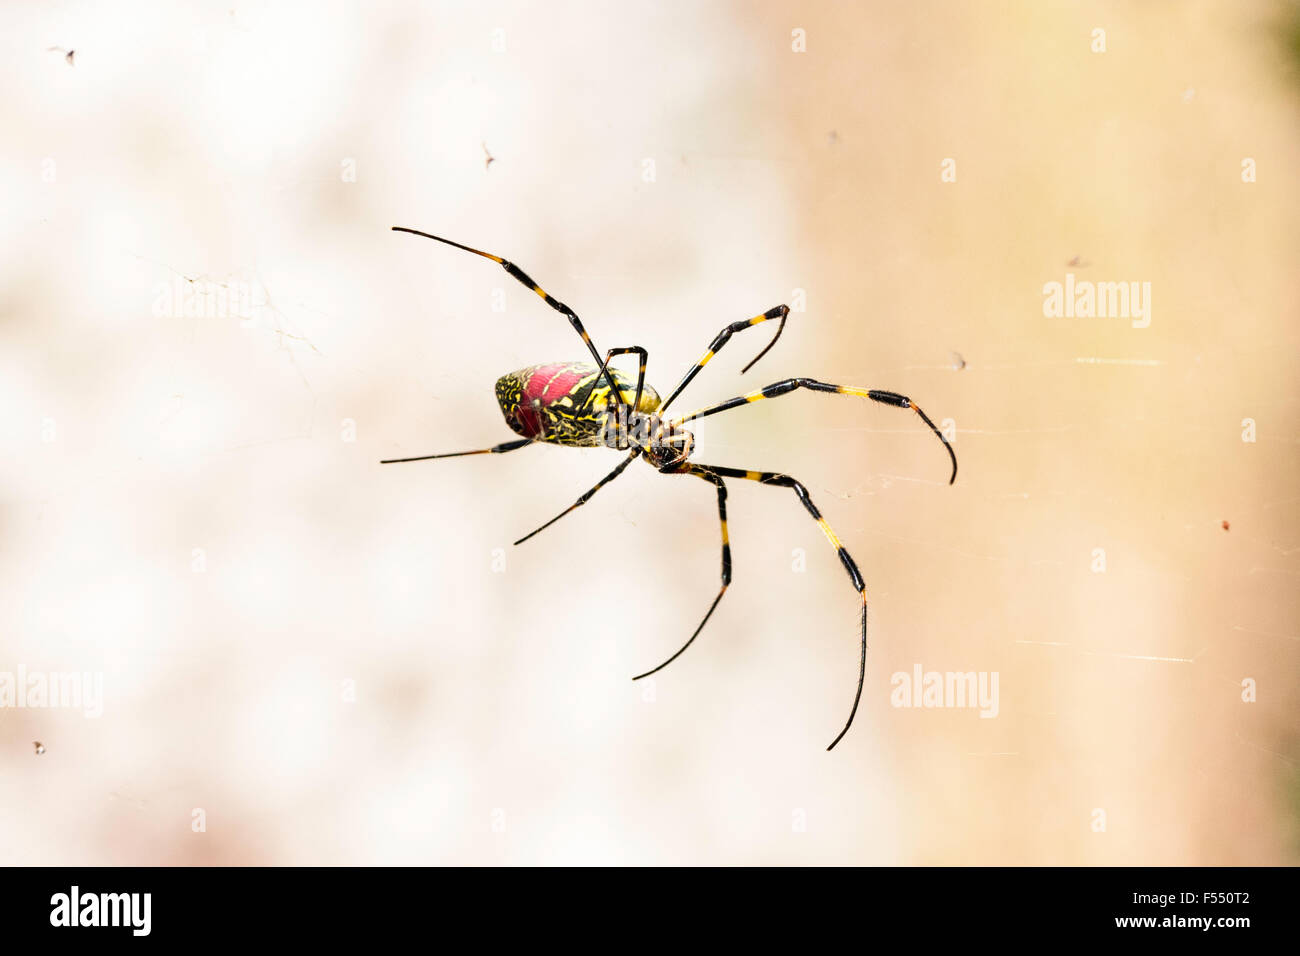 Le Japon. grande araignée rouge et jaune. Tetragnathidae, Nephila clavata, araignée Joro du Globe Doré-Spider web groupe. Close up, femme, debout dans le web. Banque D'Images